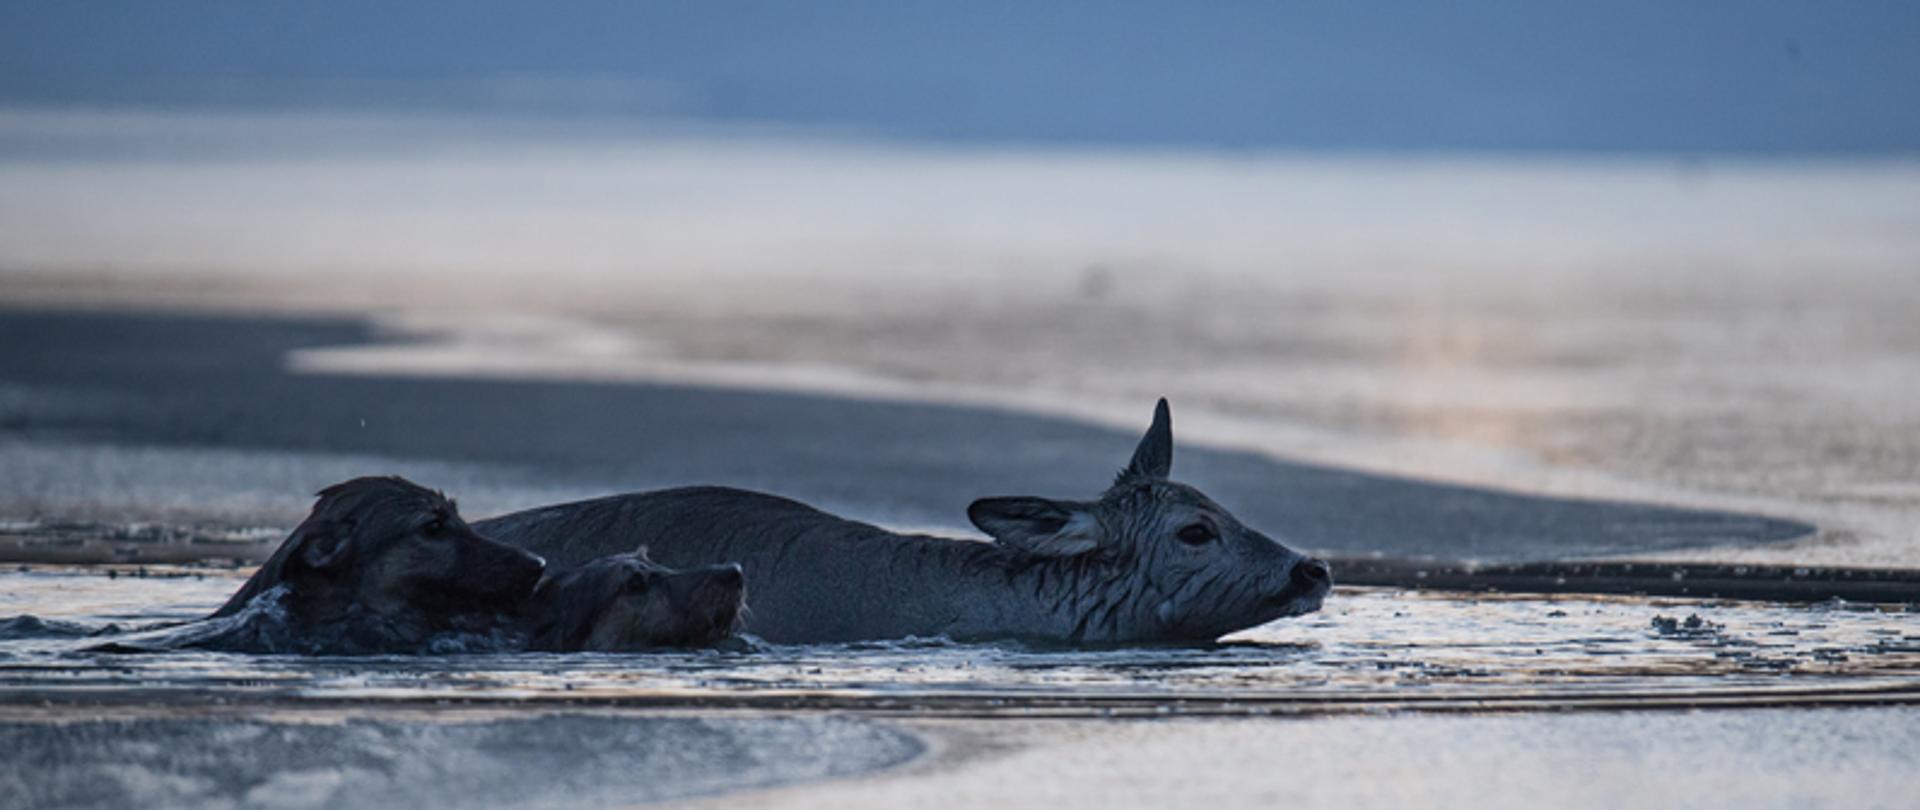 Na zdjęciu widoczna sarna oraz dwa psy, zanurzone w wodzie. Ponad lustro wody wystają głowy zwierząt. Widoczna pokrywa lodowa na zbiorniku.